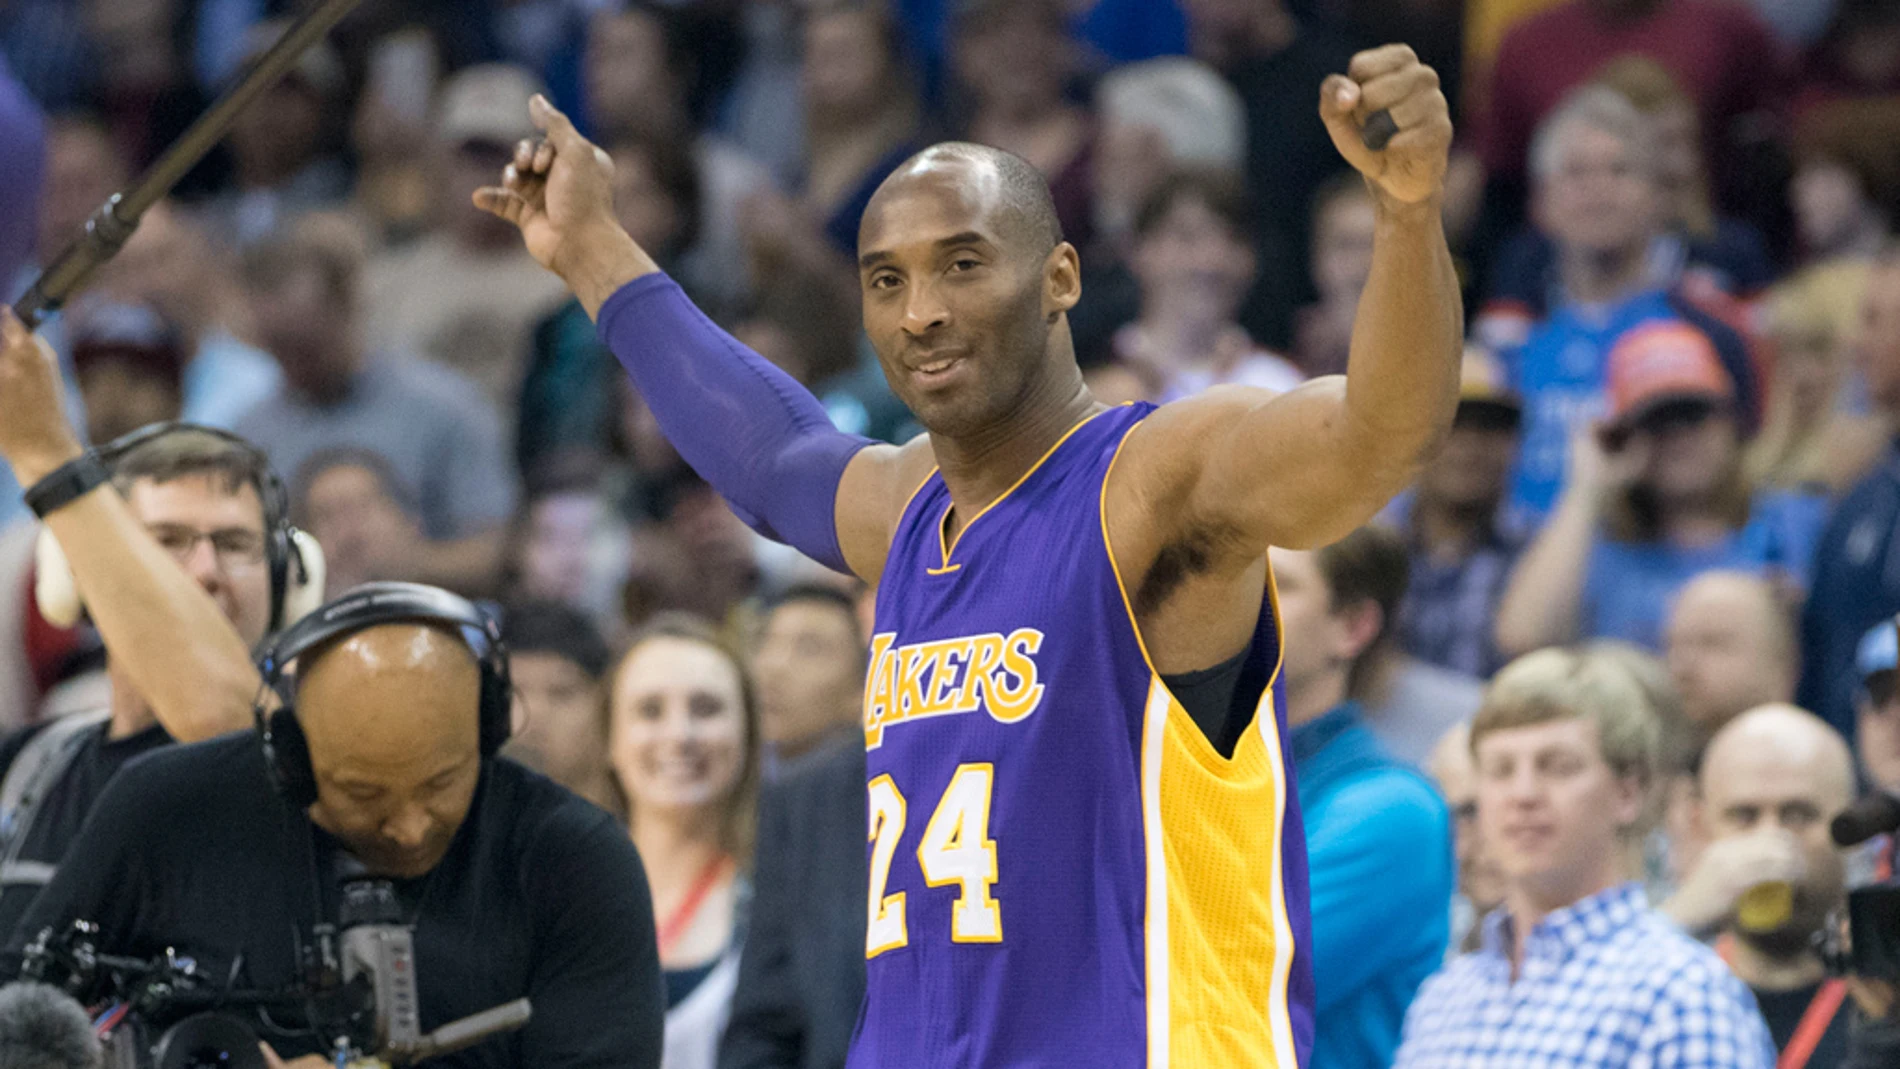 Kobe Bryant durante un partido de los Lakers